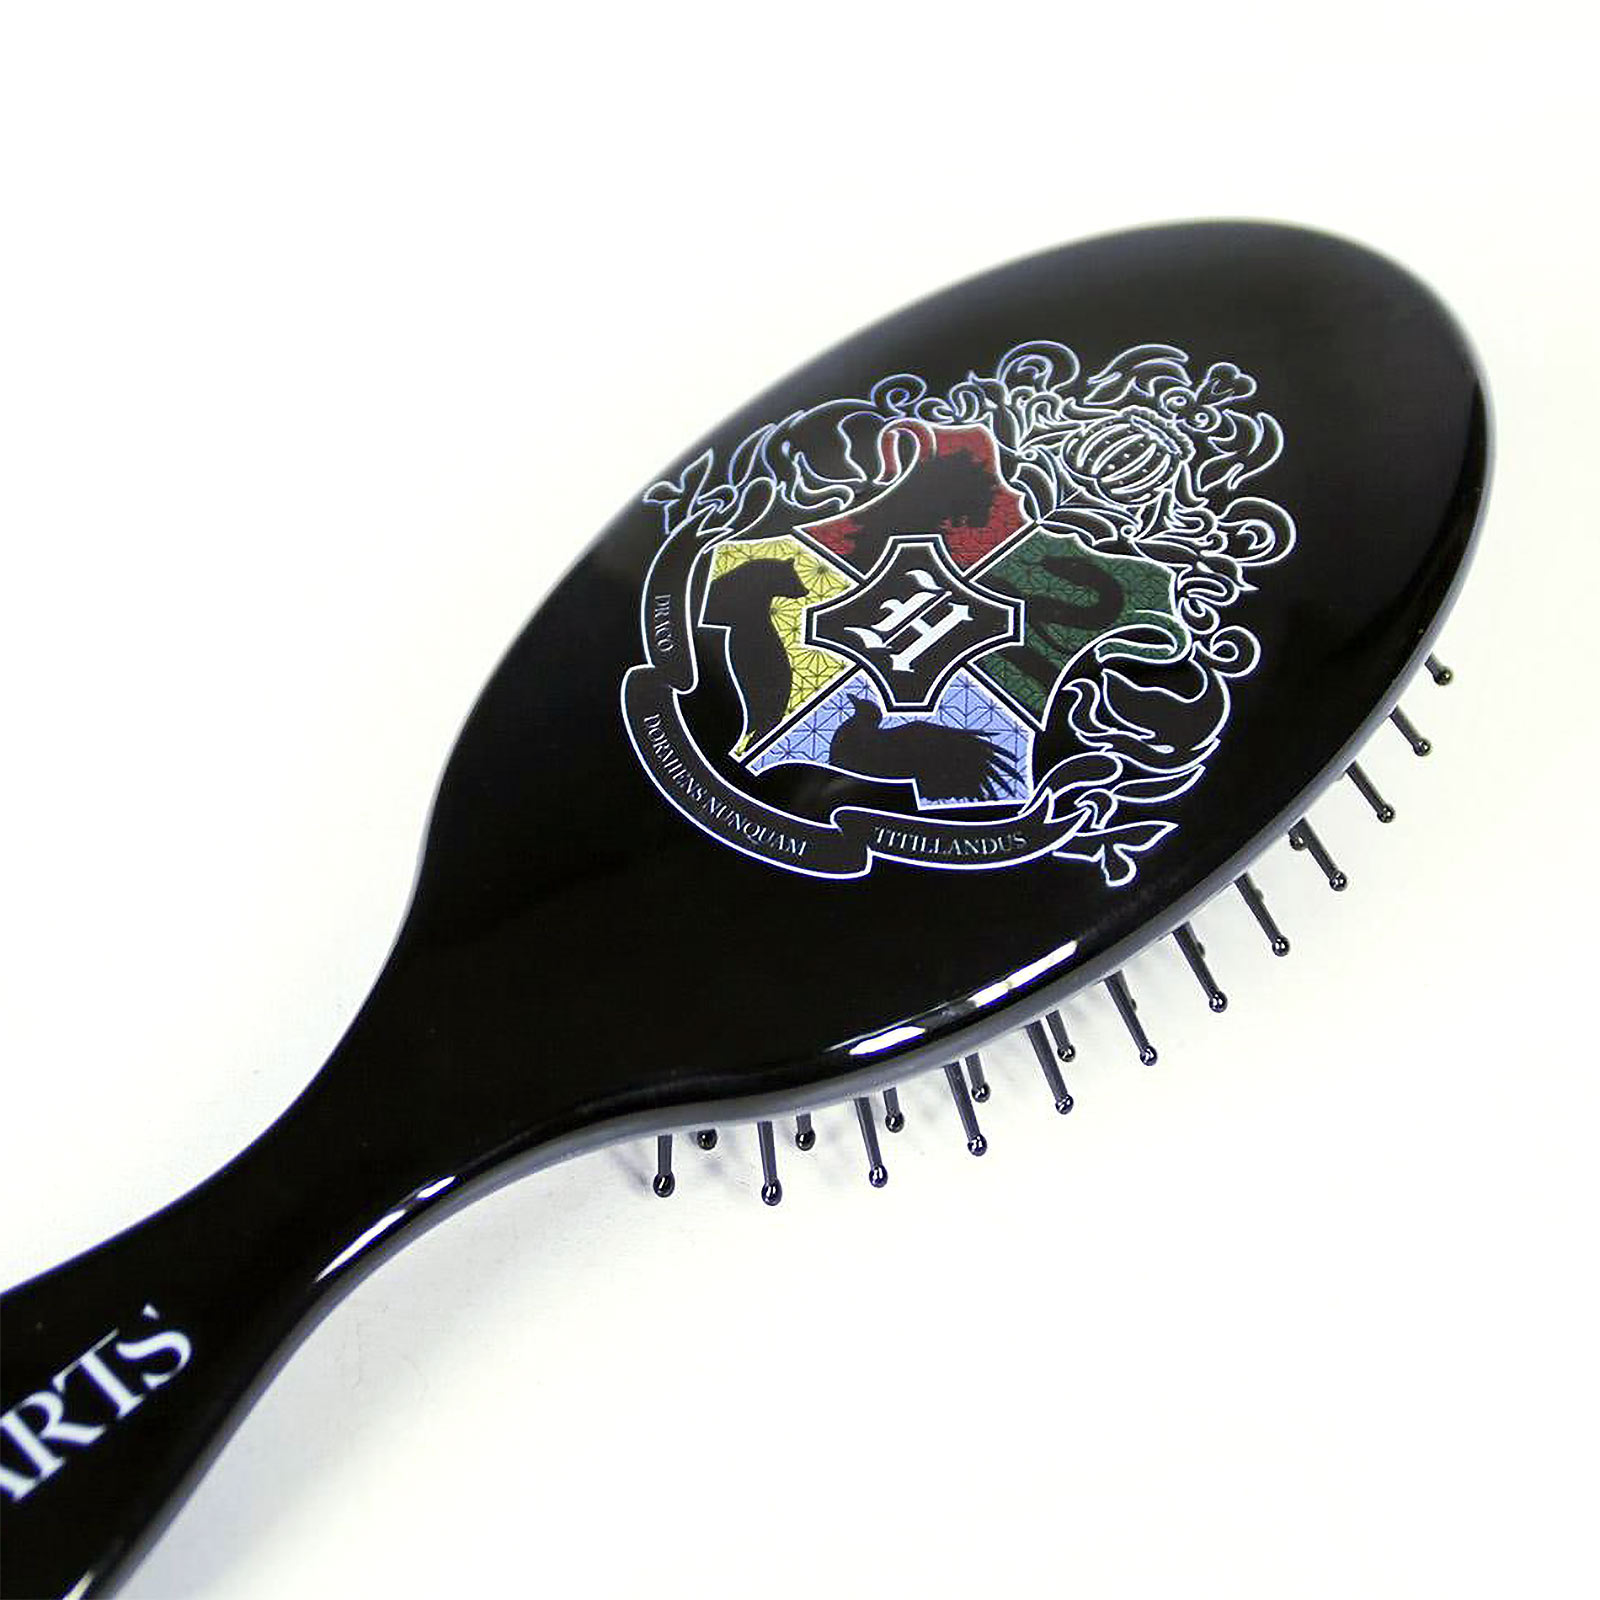 Harry Potter - Hogwarts Crest Hairbrush